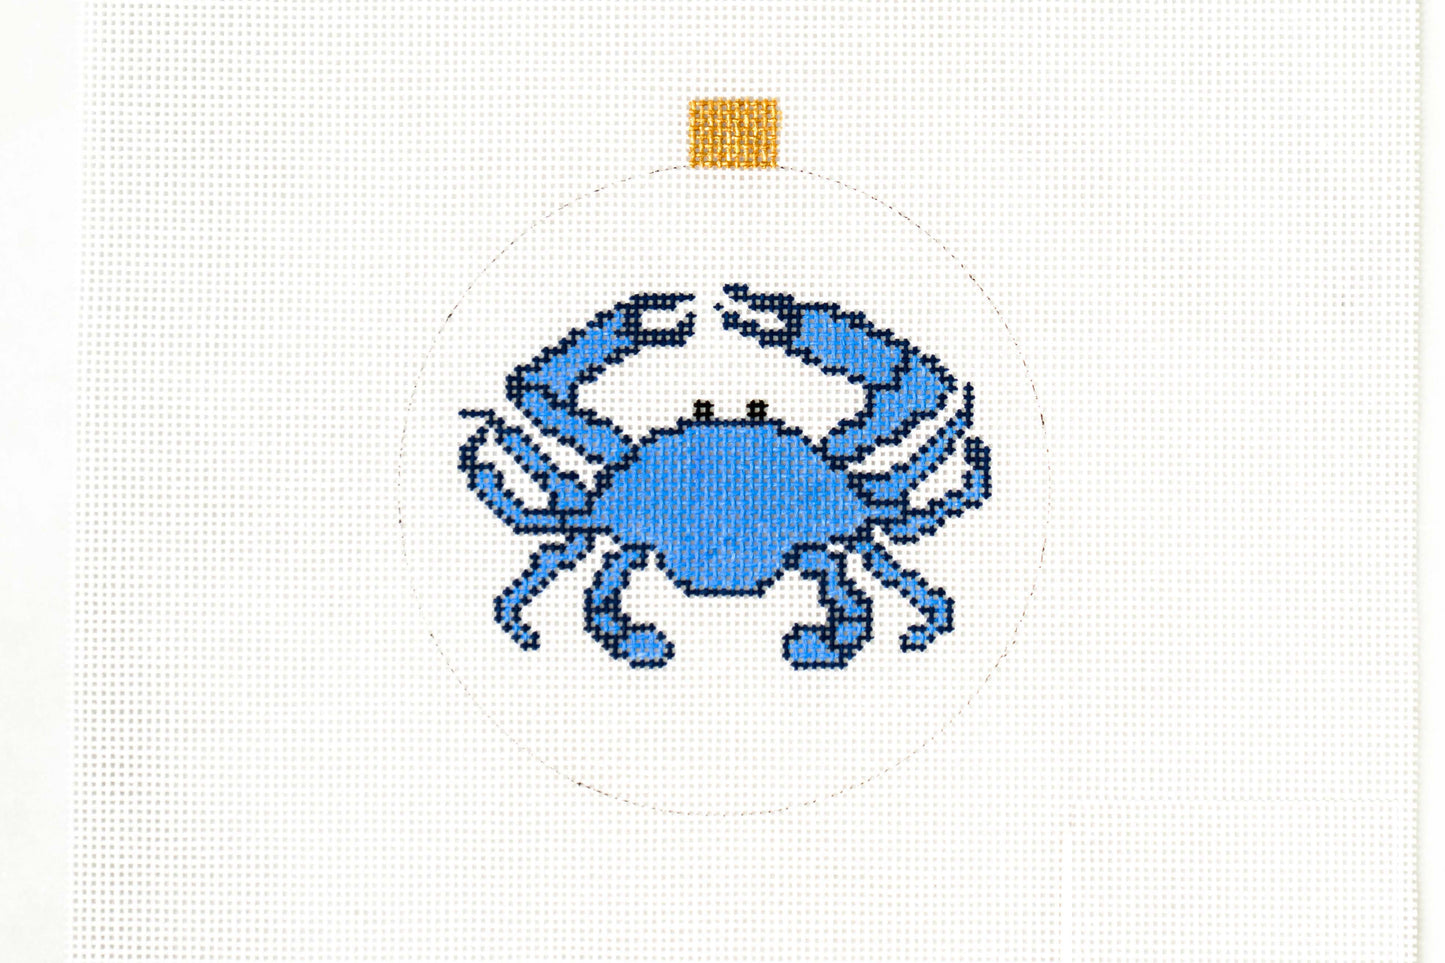 STUDIO SECOND: Blue Crab ornament/coaster